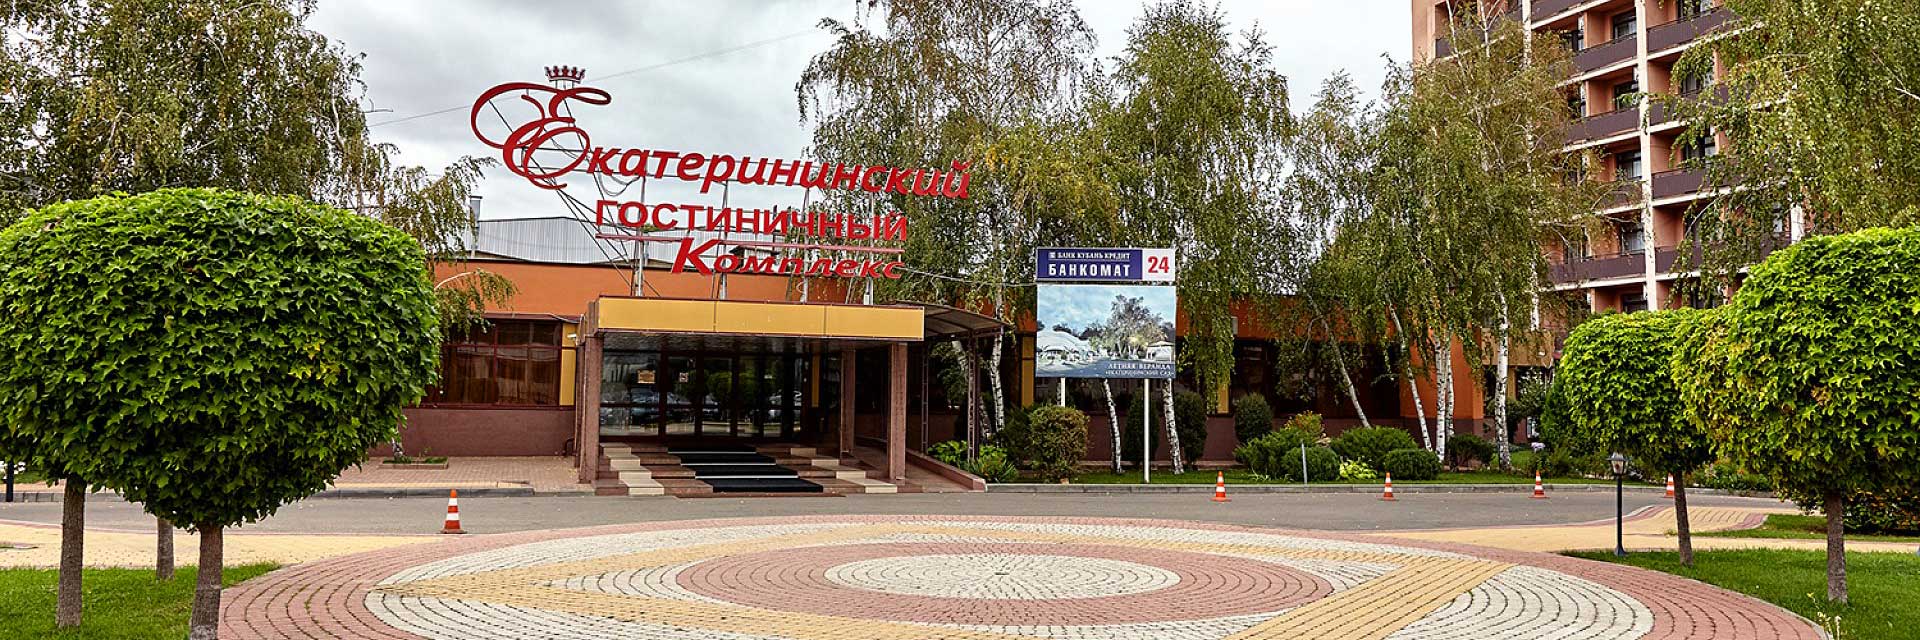 Гостинично-ресторанный комплекс «Екатерининский»